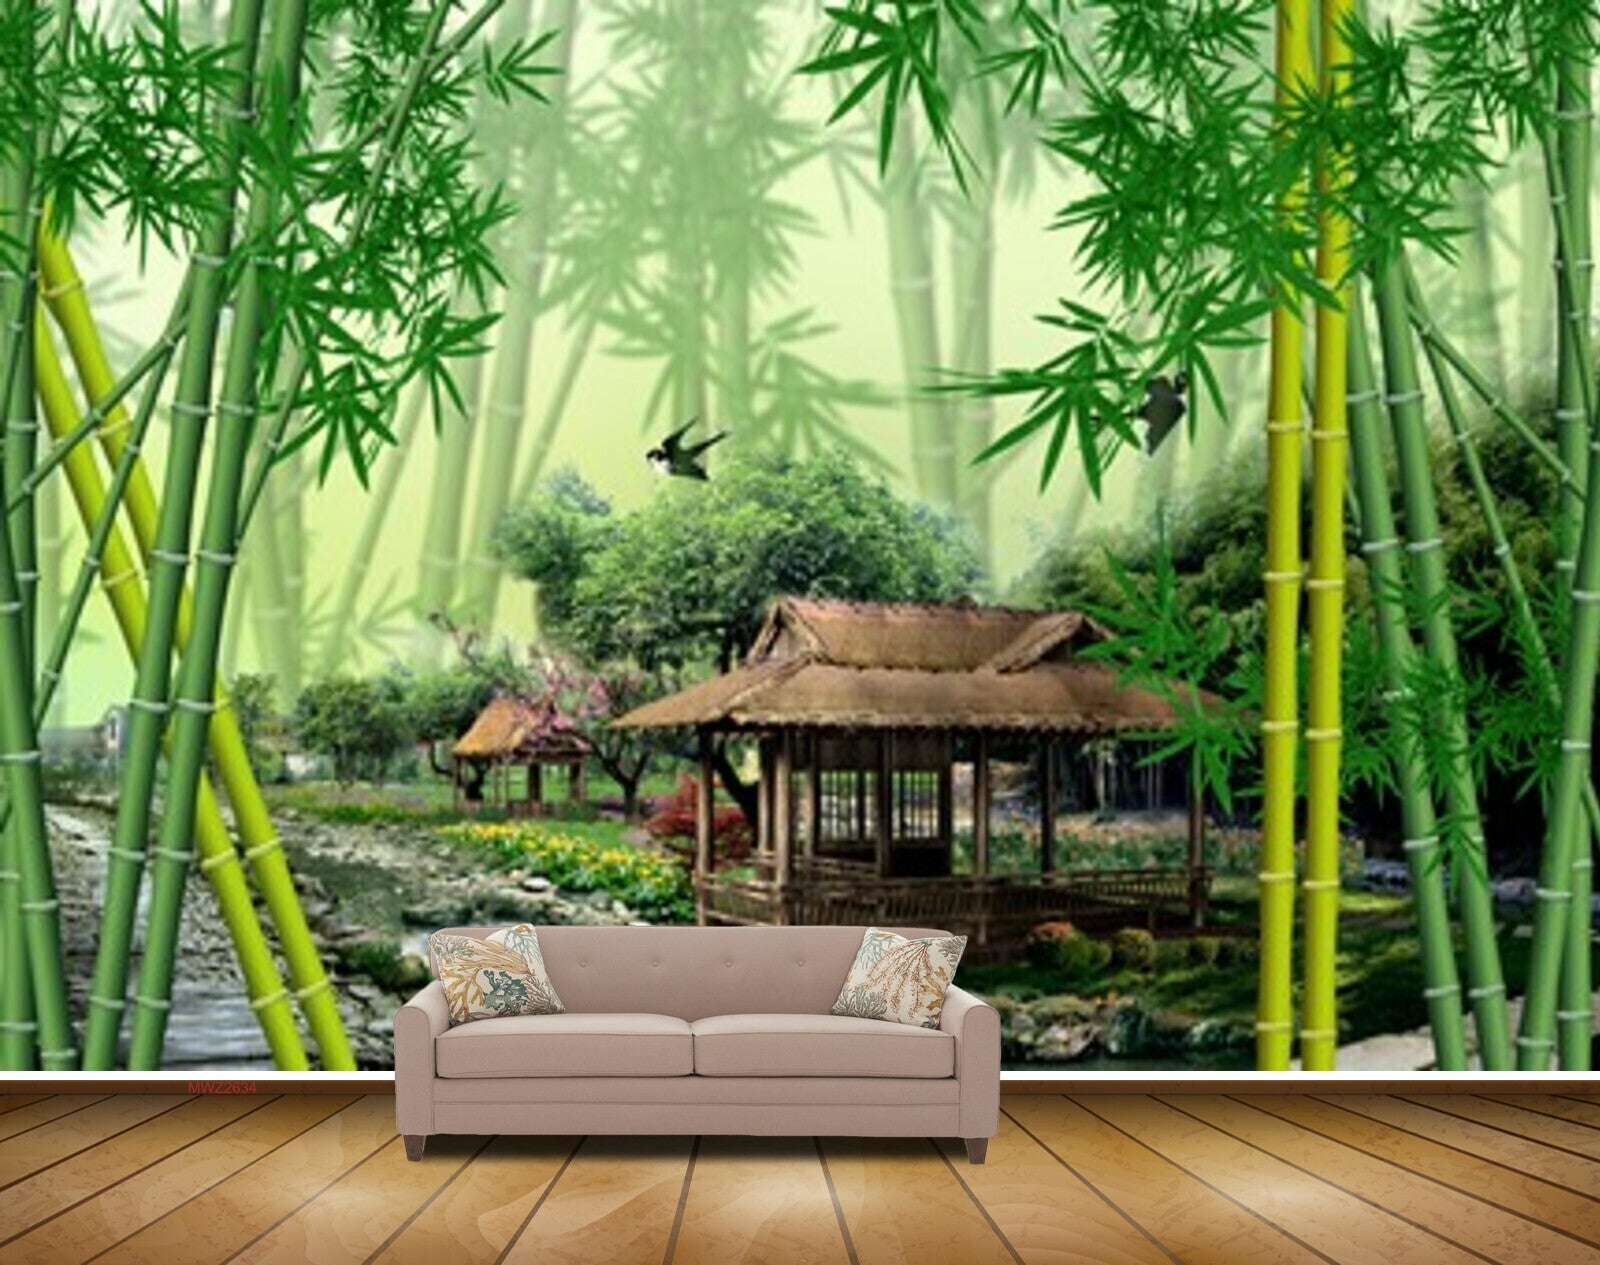 Avikalp MWZ2634 Bamboo Trees Hut Birds River Pond Water Leaves HD Wall –  Avikalp International - 3D Wallpapers